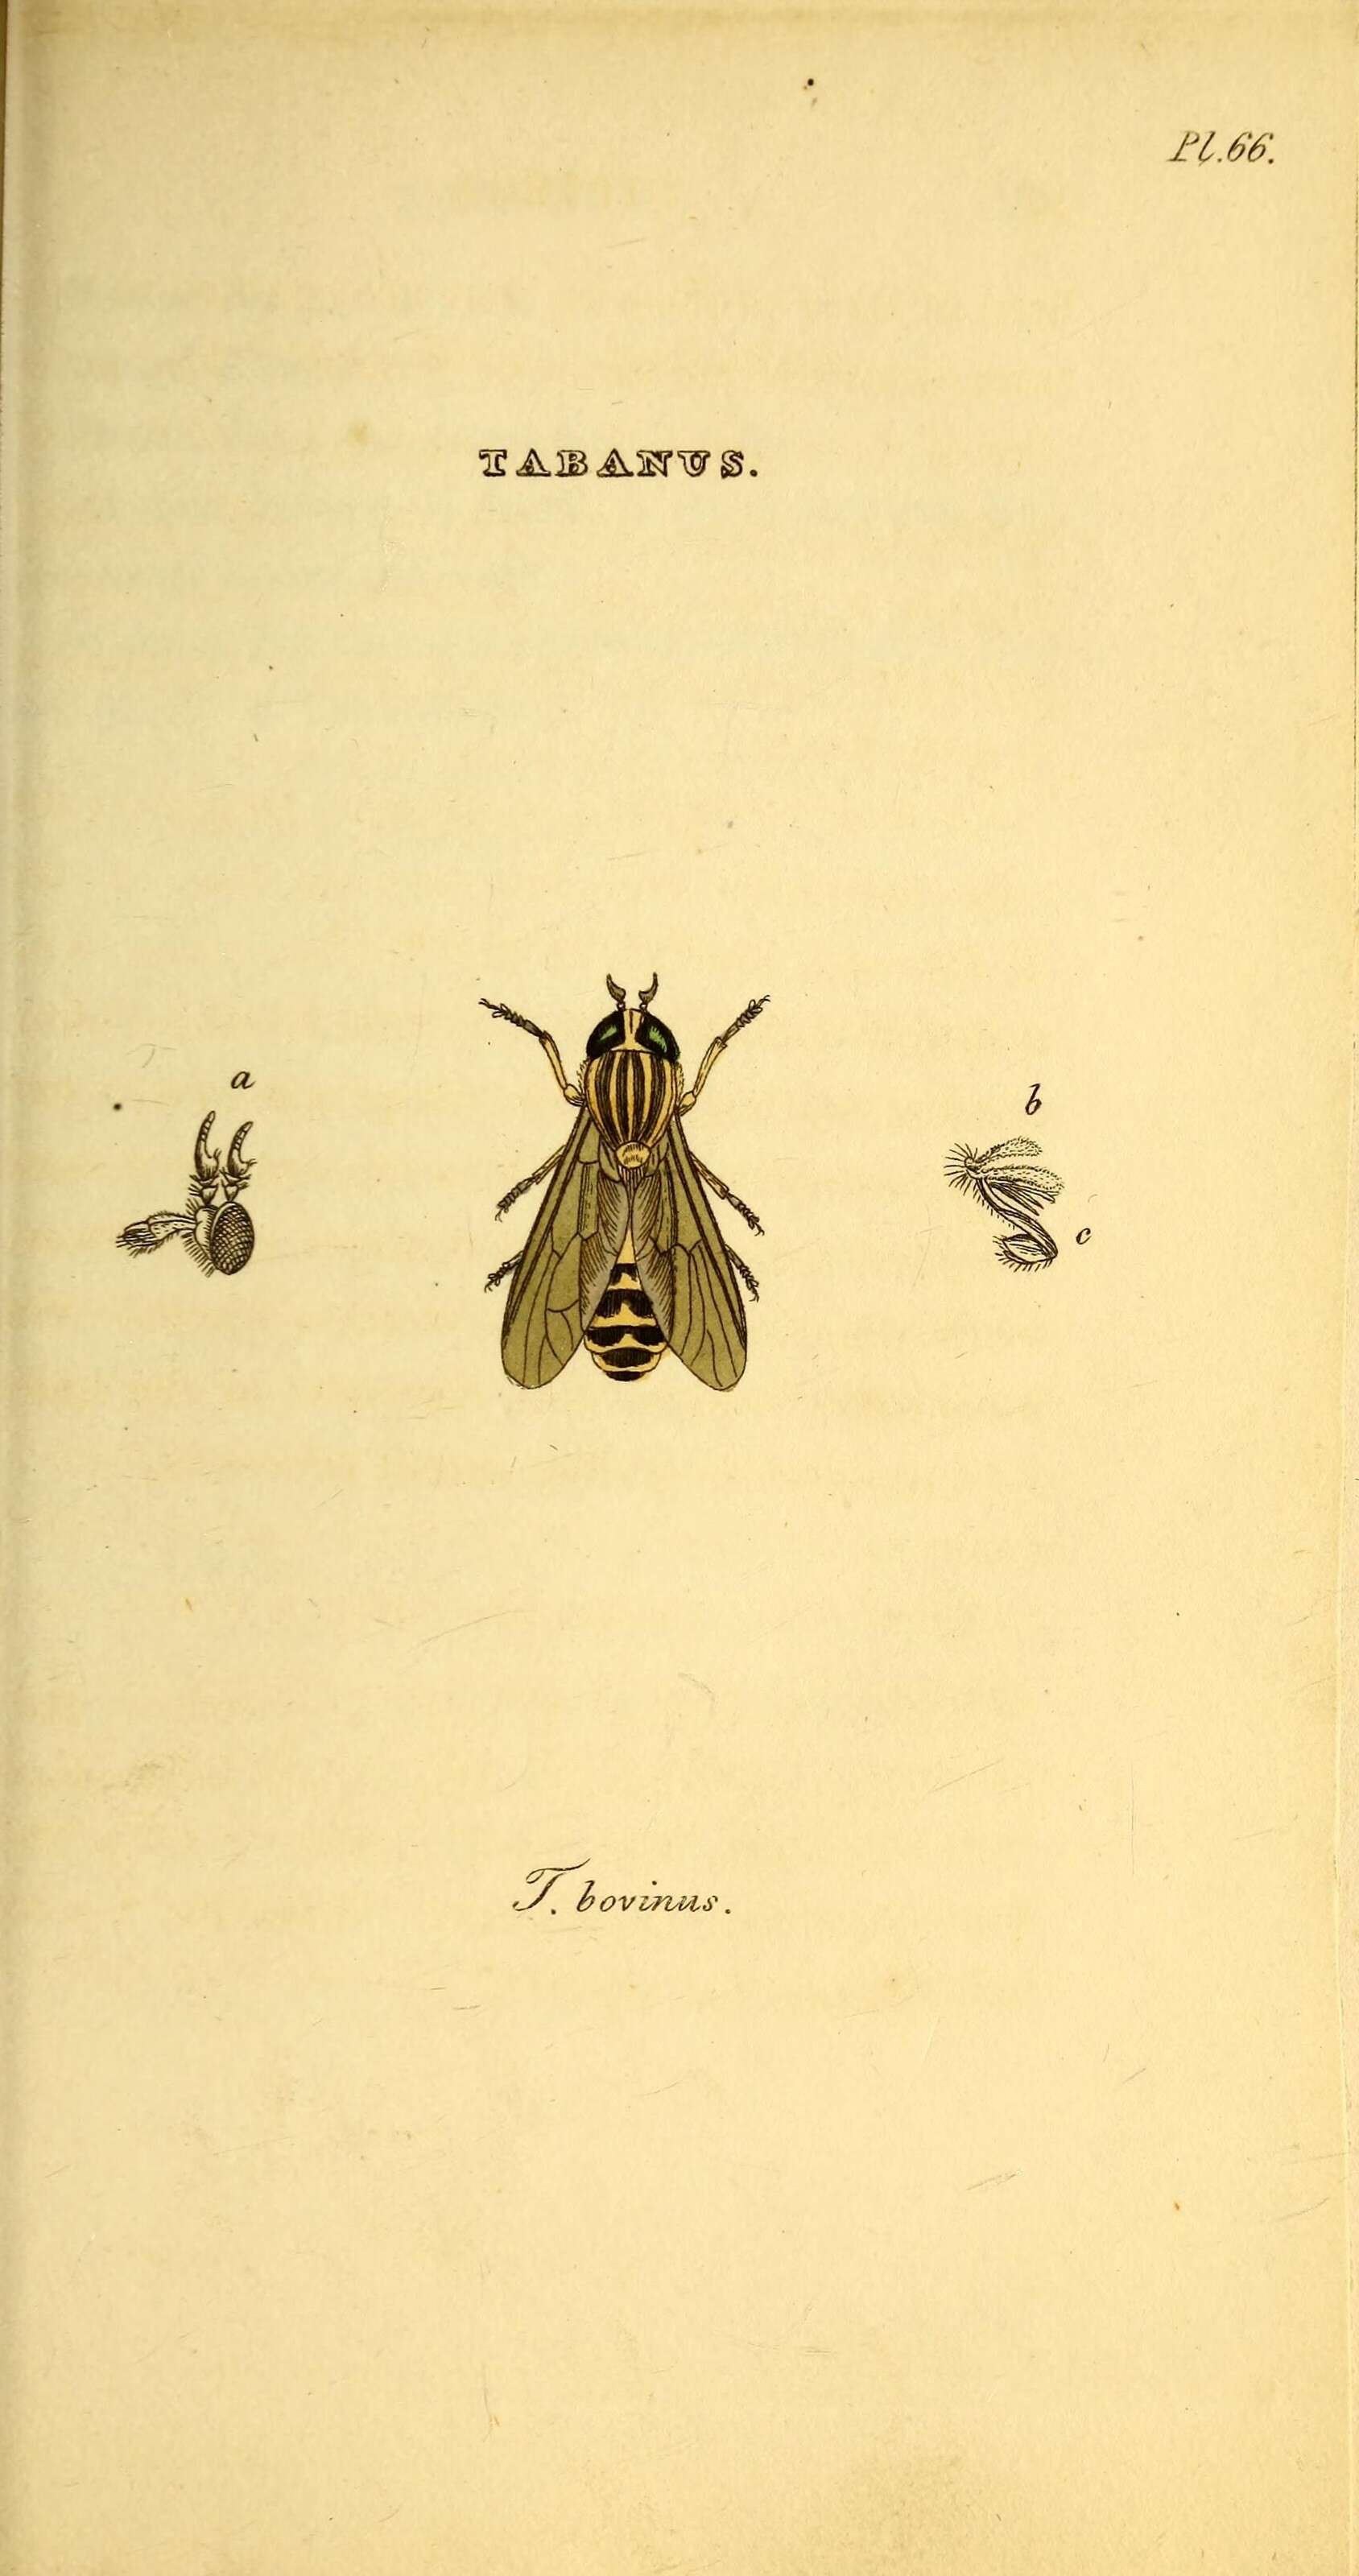 Image de Tabanus bovinus Linnaeus 1758